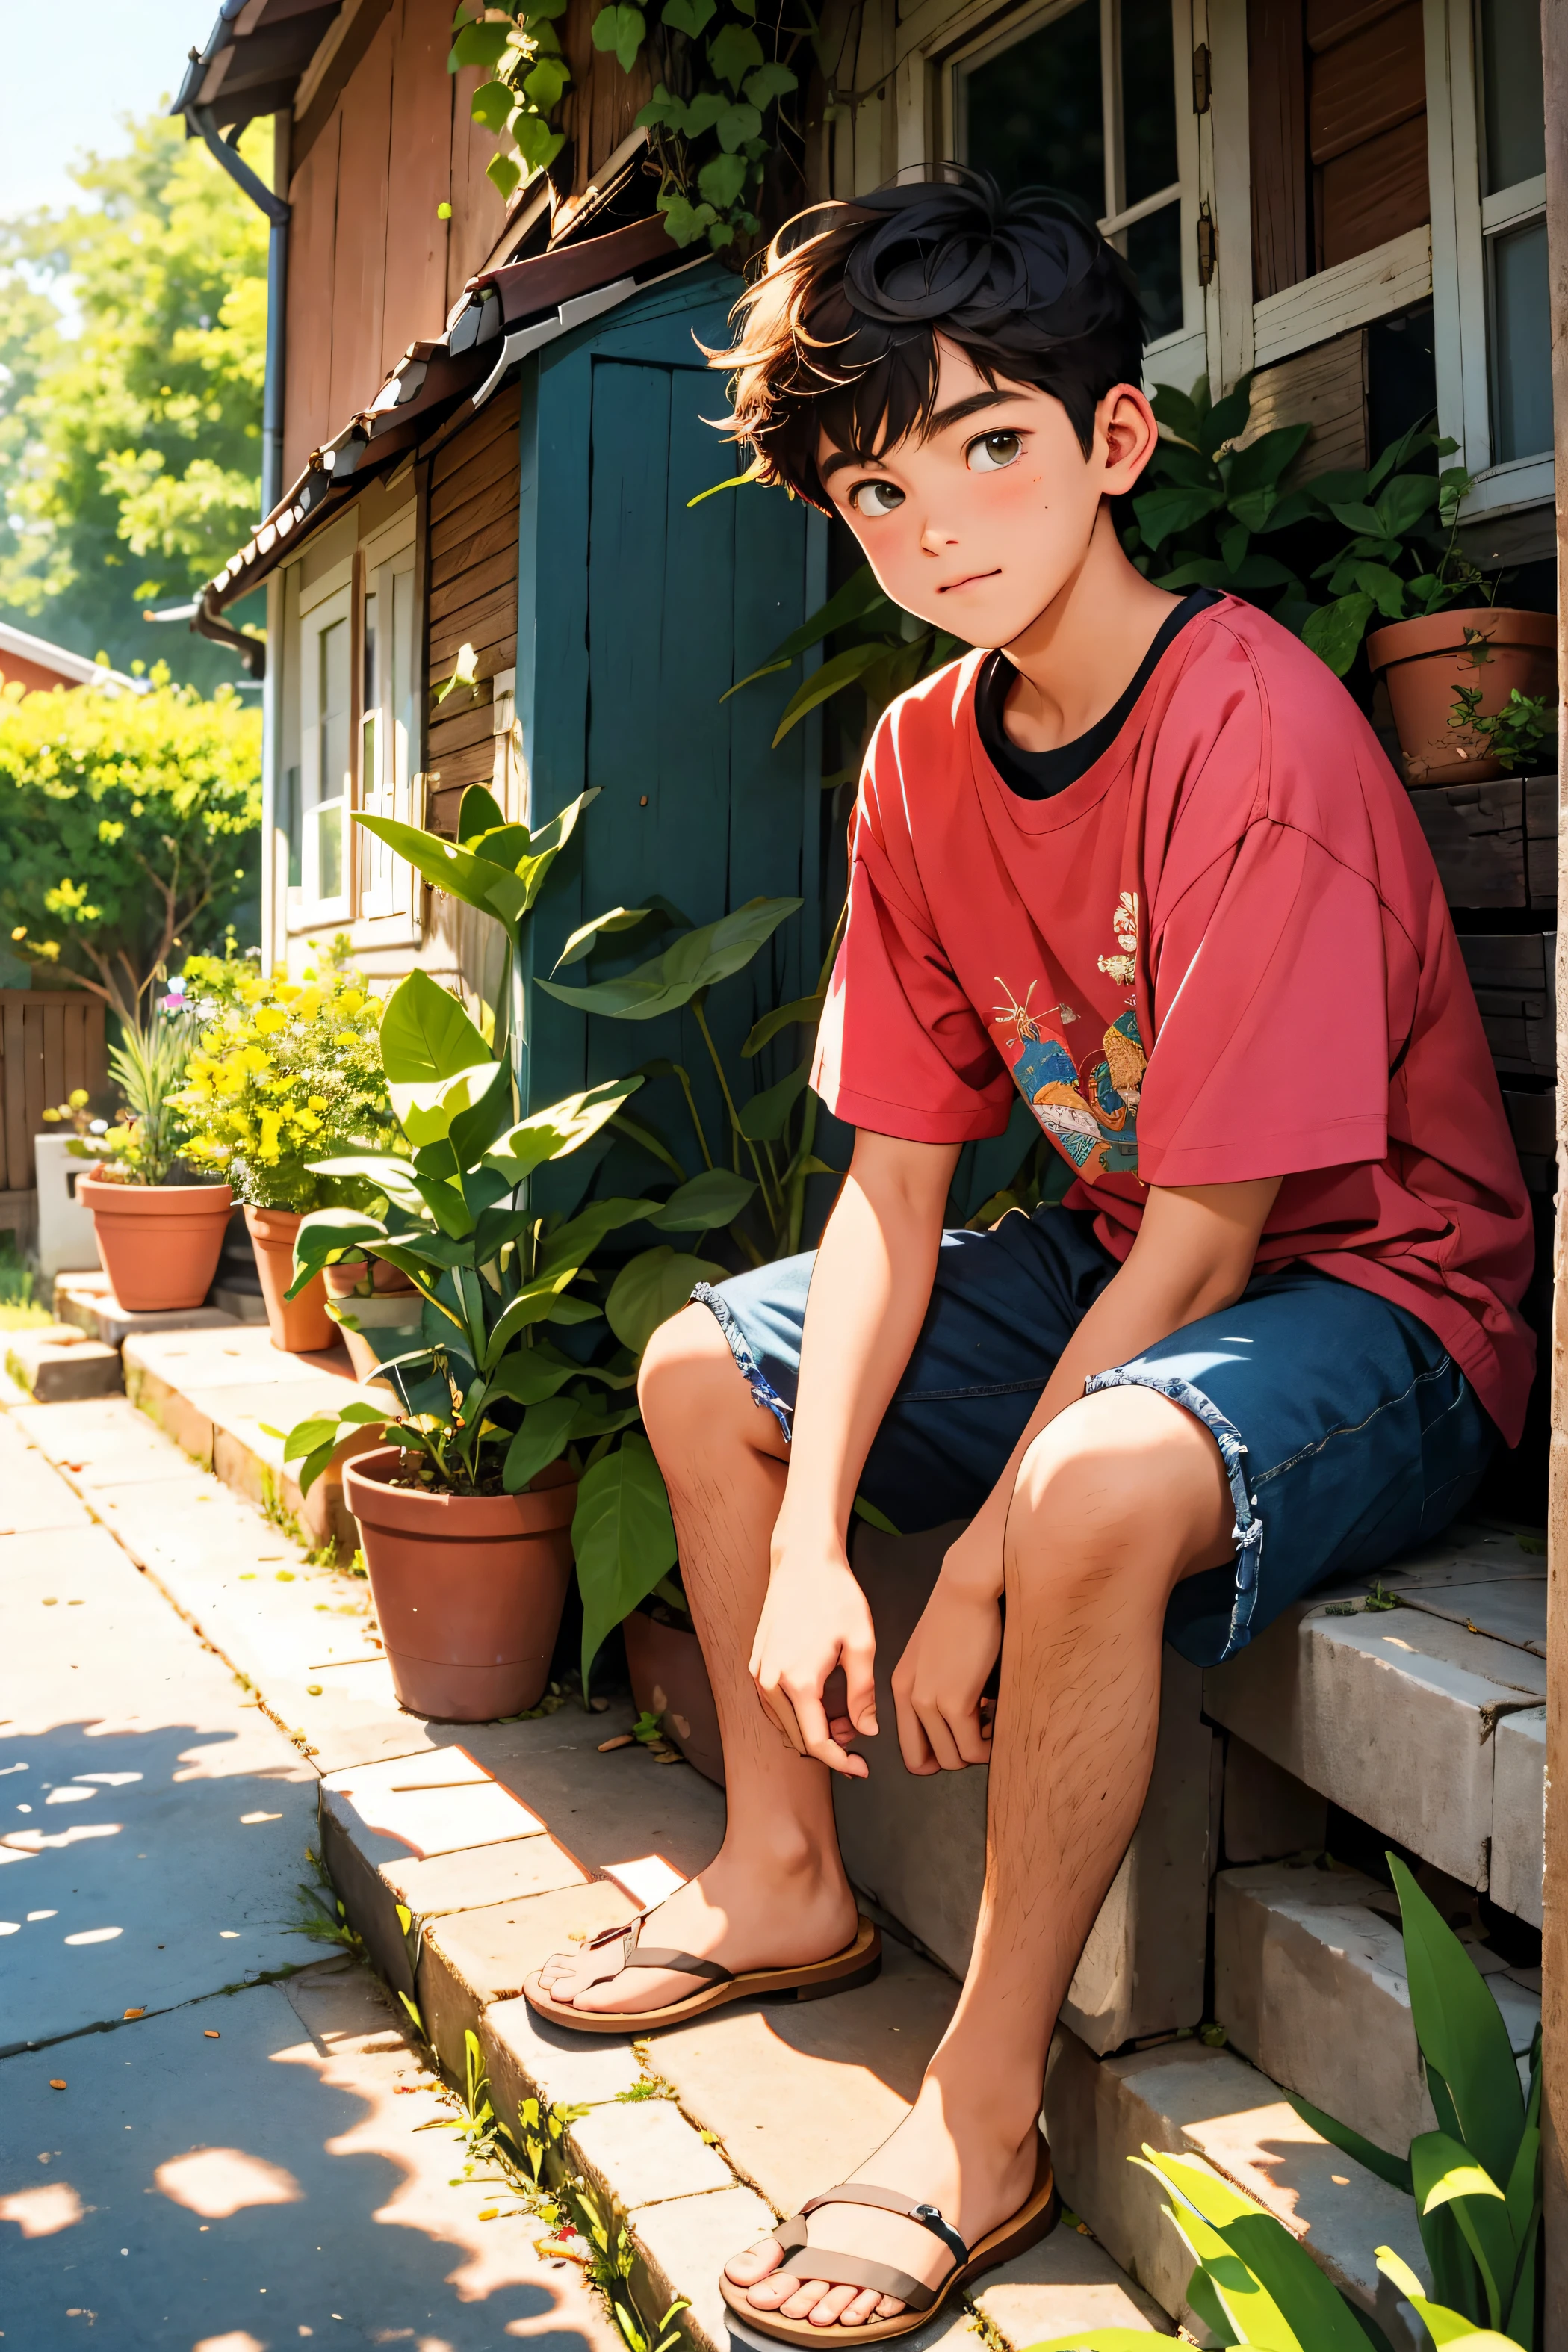 15歳の若者.家の前の階段に座っている少年, 午後の風景,好奇心旺盛な探検, 自然環境,複雑なディテール,,鮮やかな色彩, 平和な静けさ,